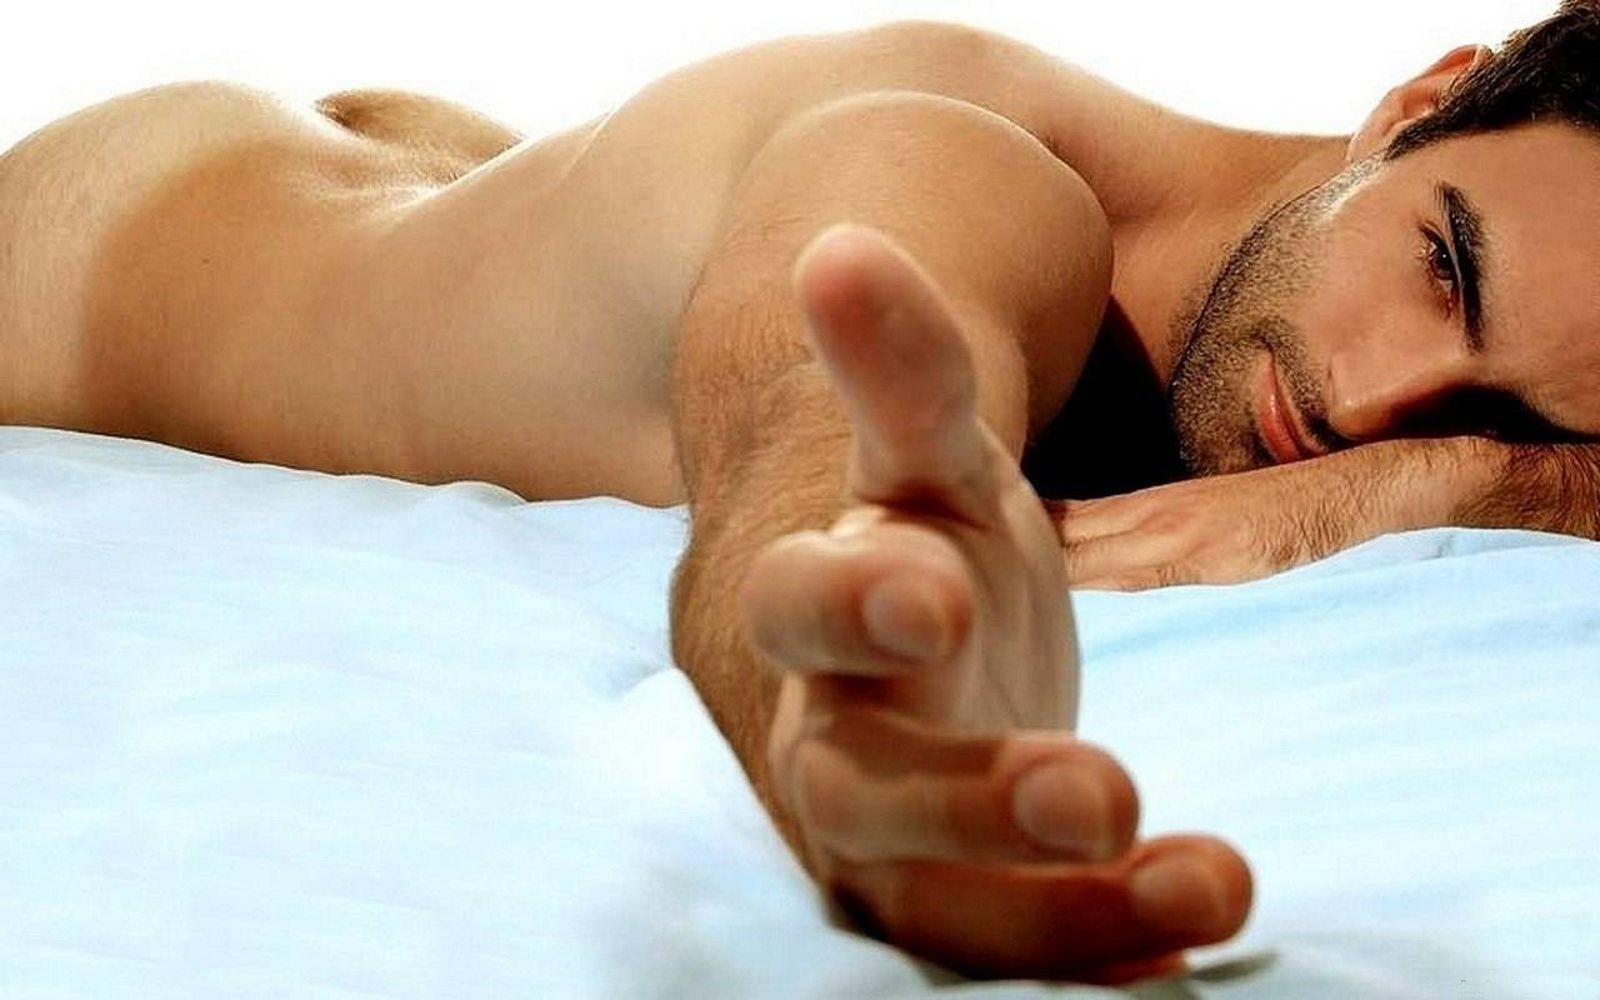 небритый мужчина лежа на животе в голом виде протягивает руку к камере, фото красивого мужчины